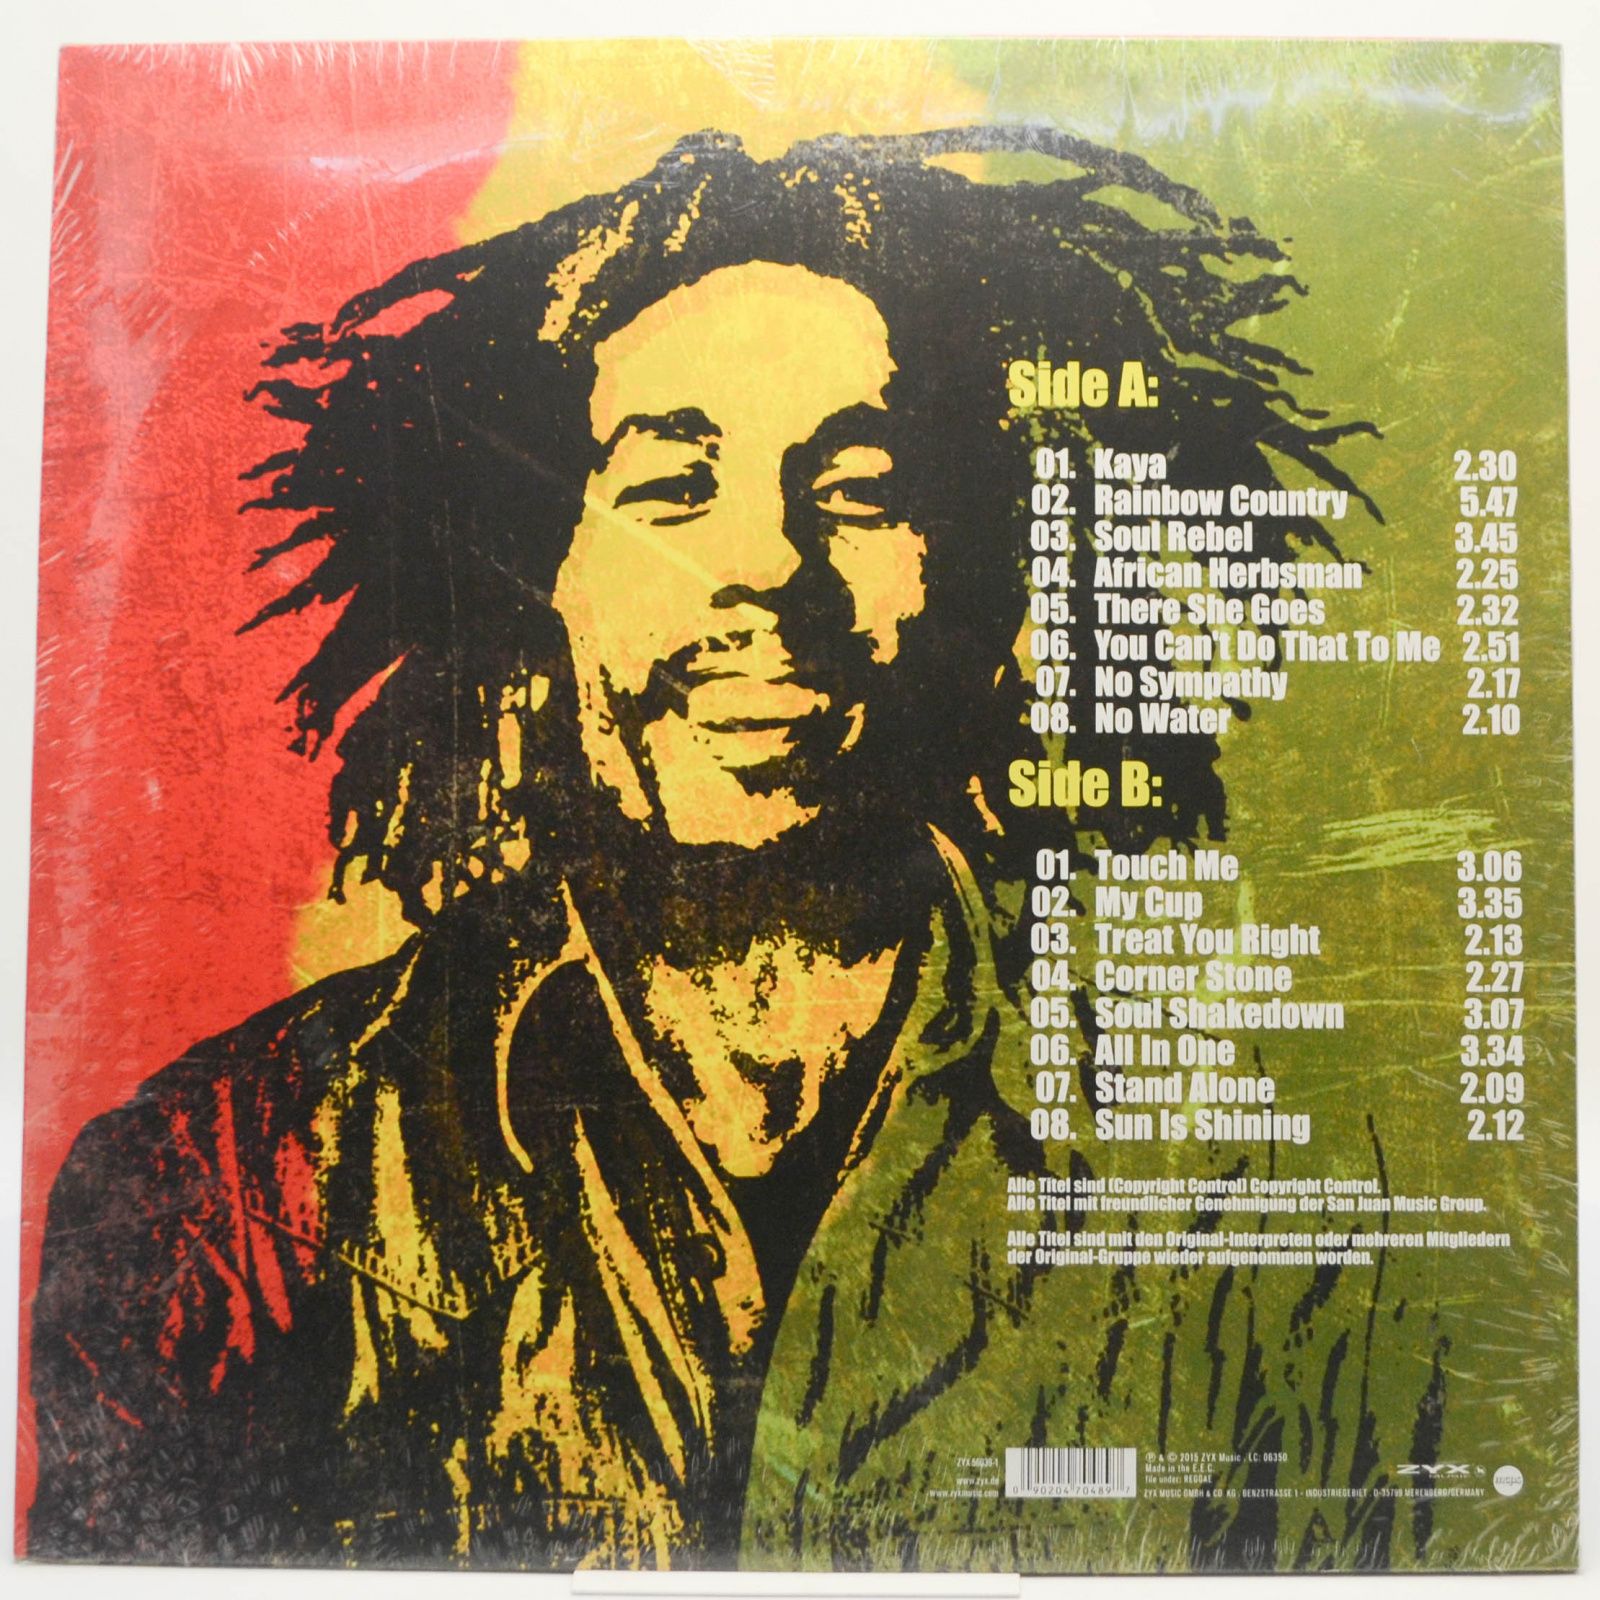 Bob Marley — The Best Of Bob Marley, 2015